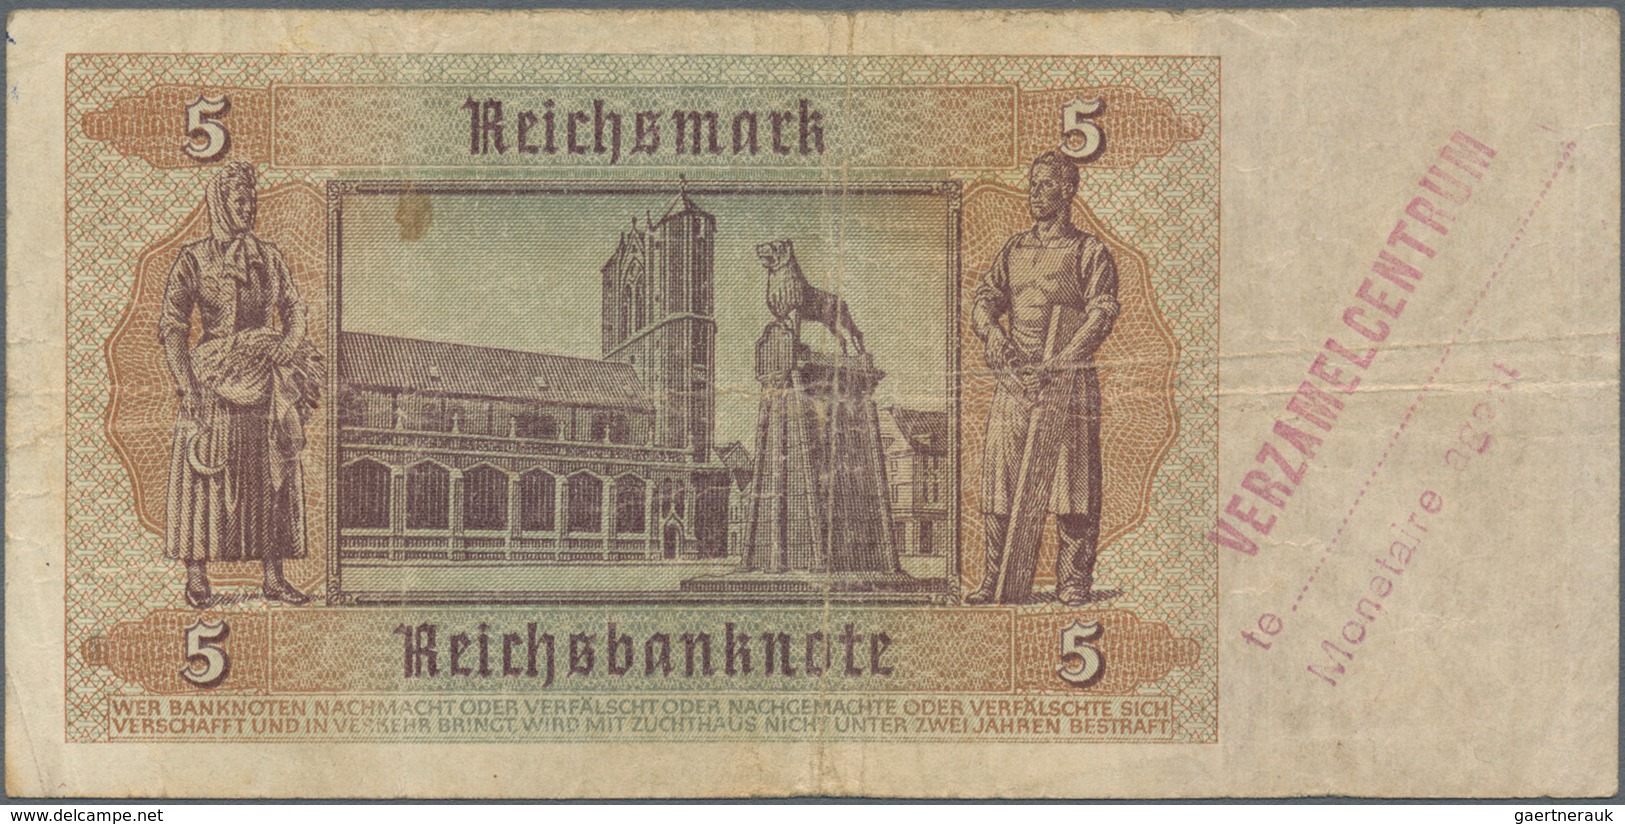 Deutschland - Deutsches Reich bis 1945: Kleines Lot mit 7 belgischen Abstempelungen auf 5 Reichsmark